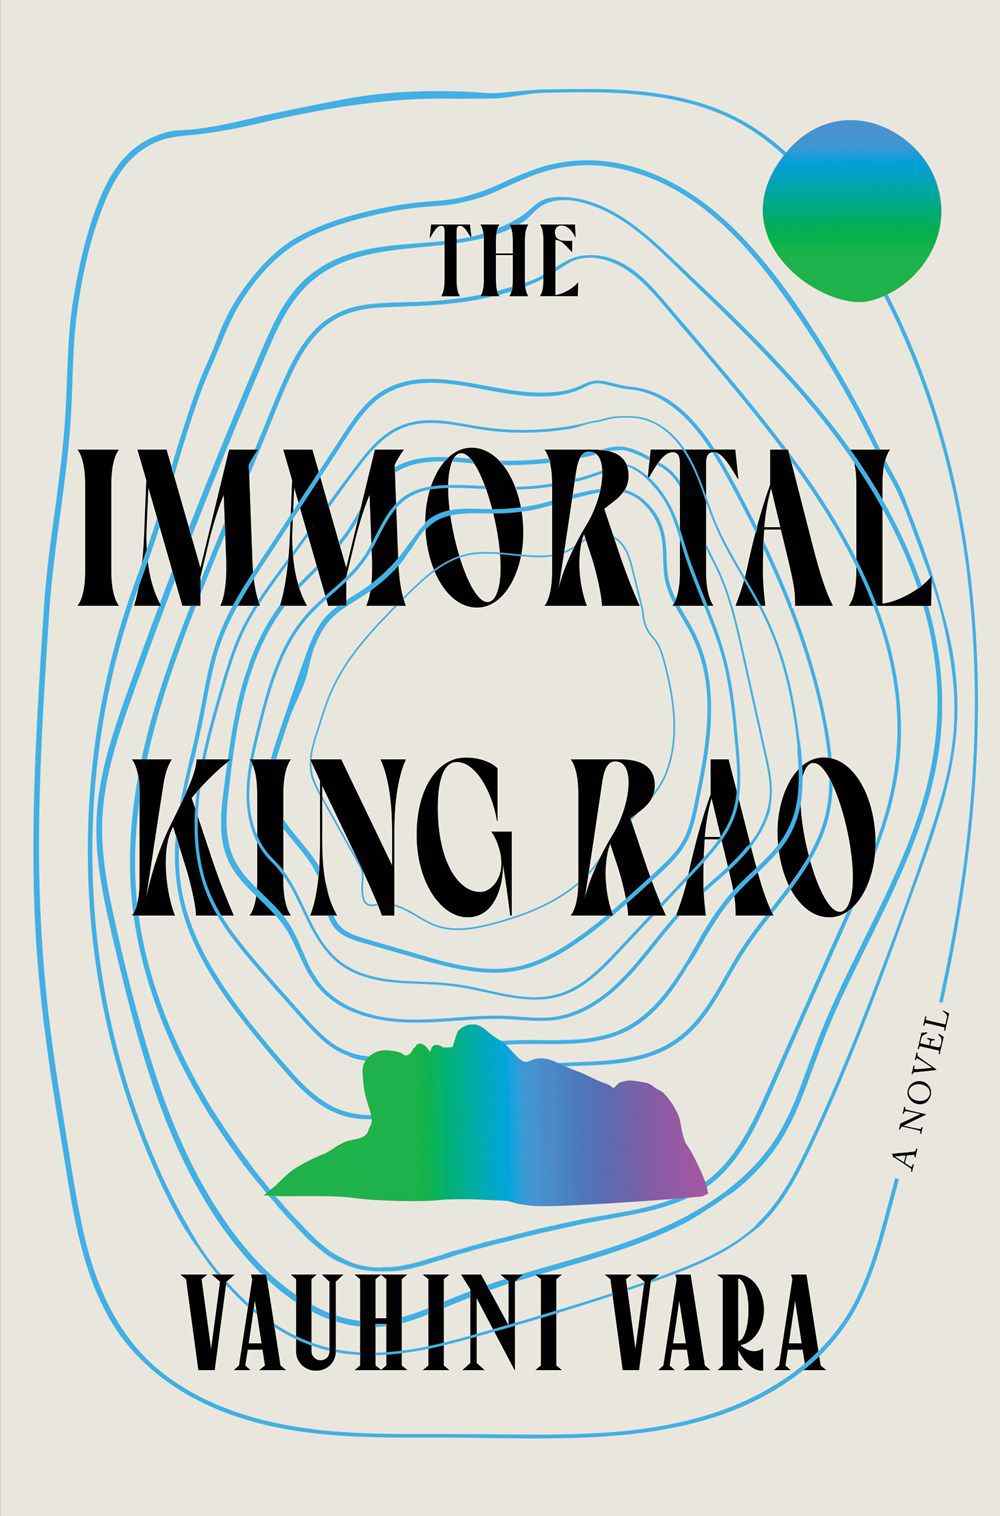 La couverture de The Immortal King Rao, avec un groupe de cercles concentriques inégaux et une silhouette tournée vers le haut.